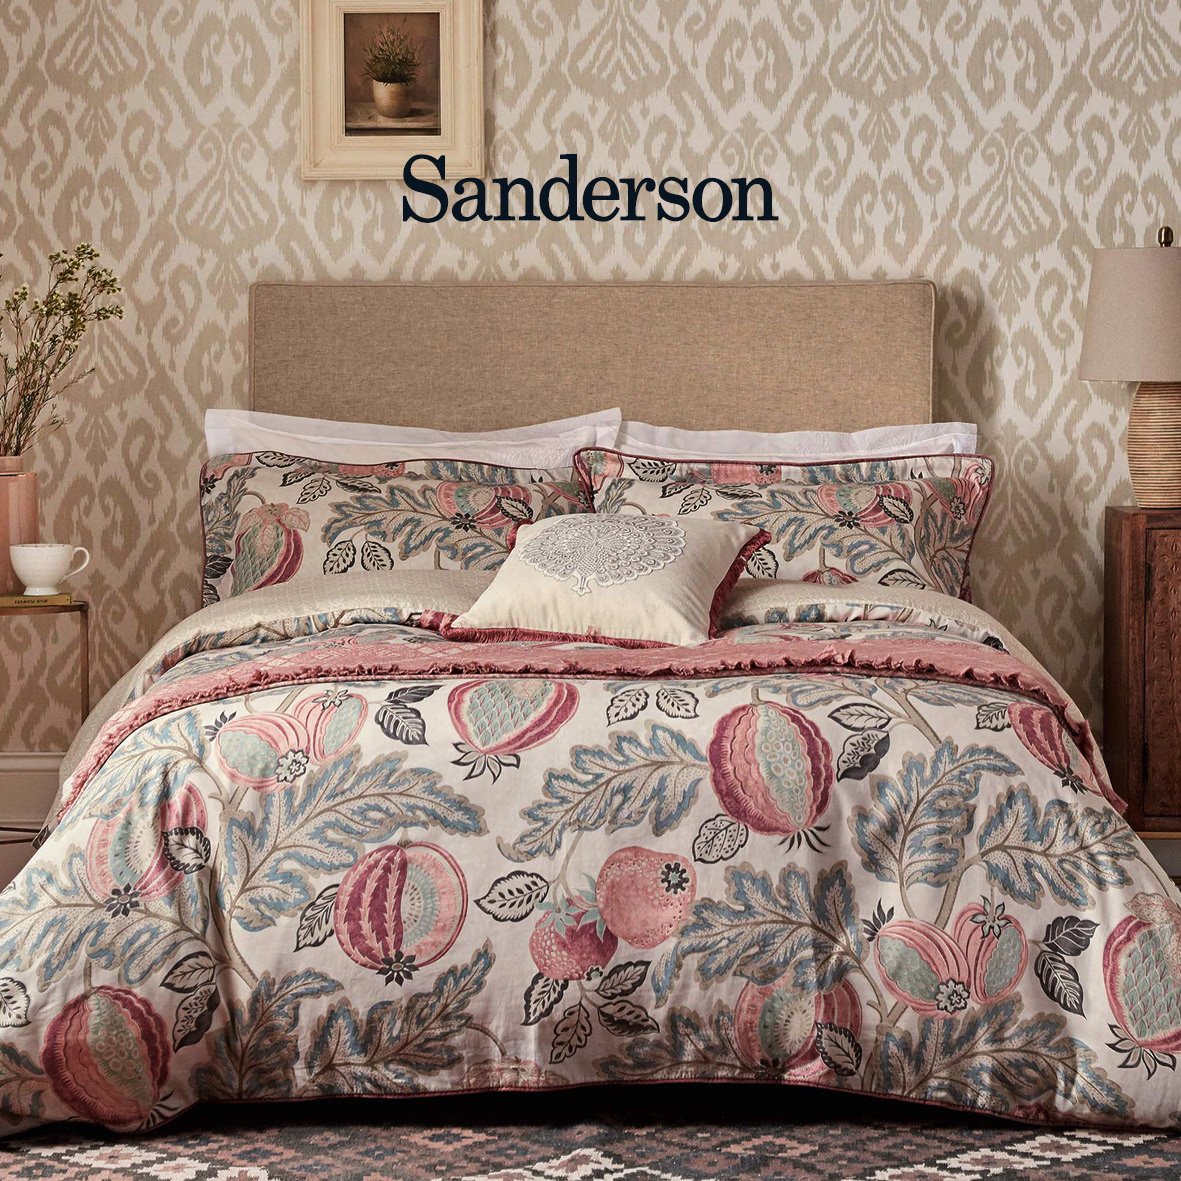 Sanderson Cantaloupe Bedding in Blush & Dove